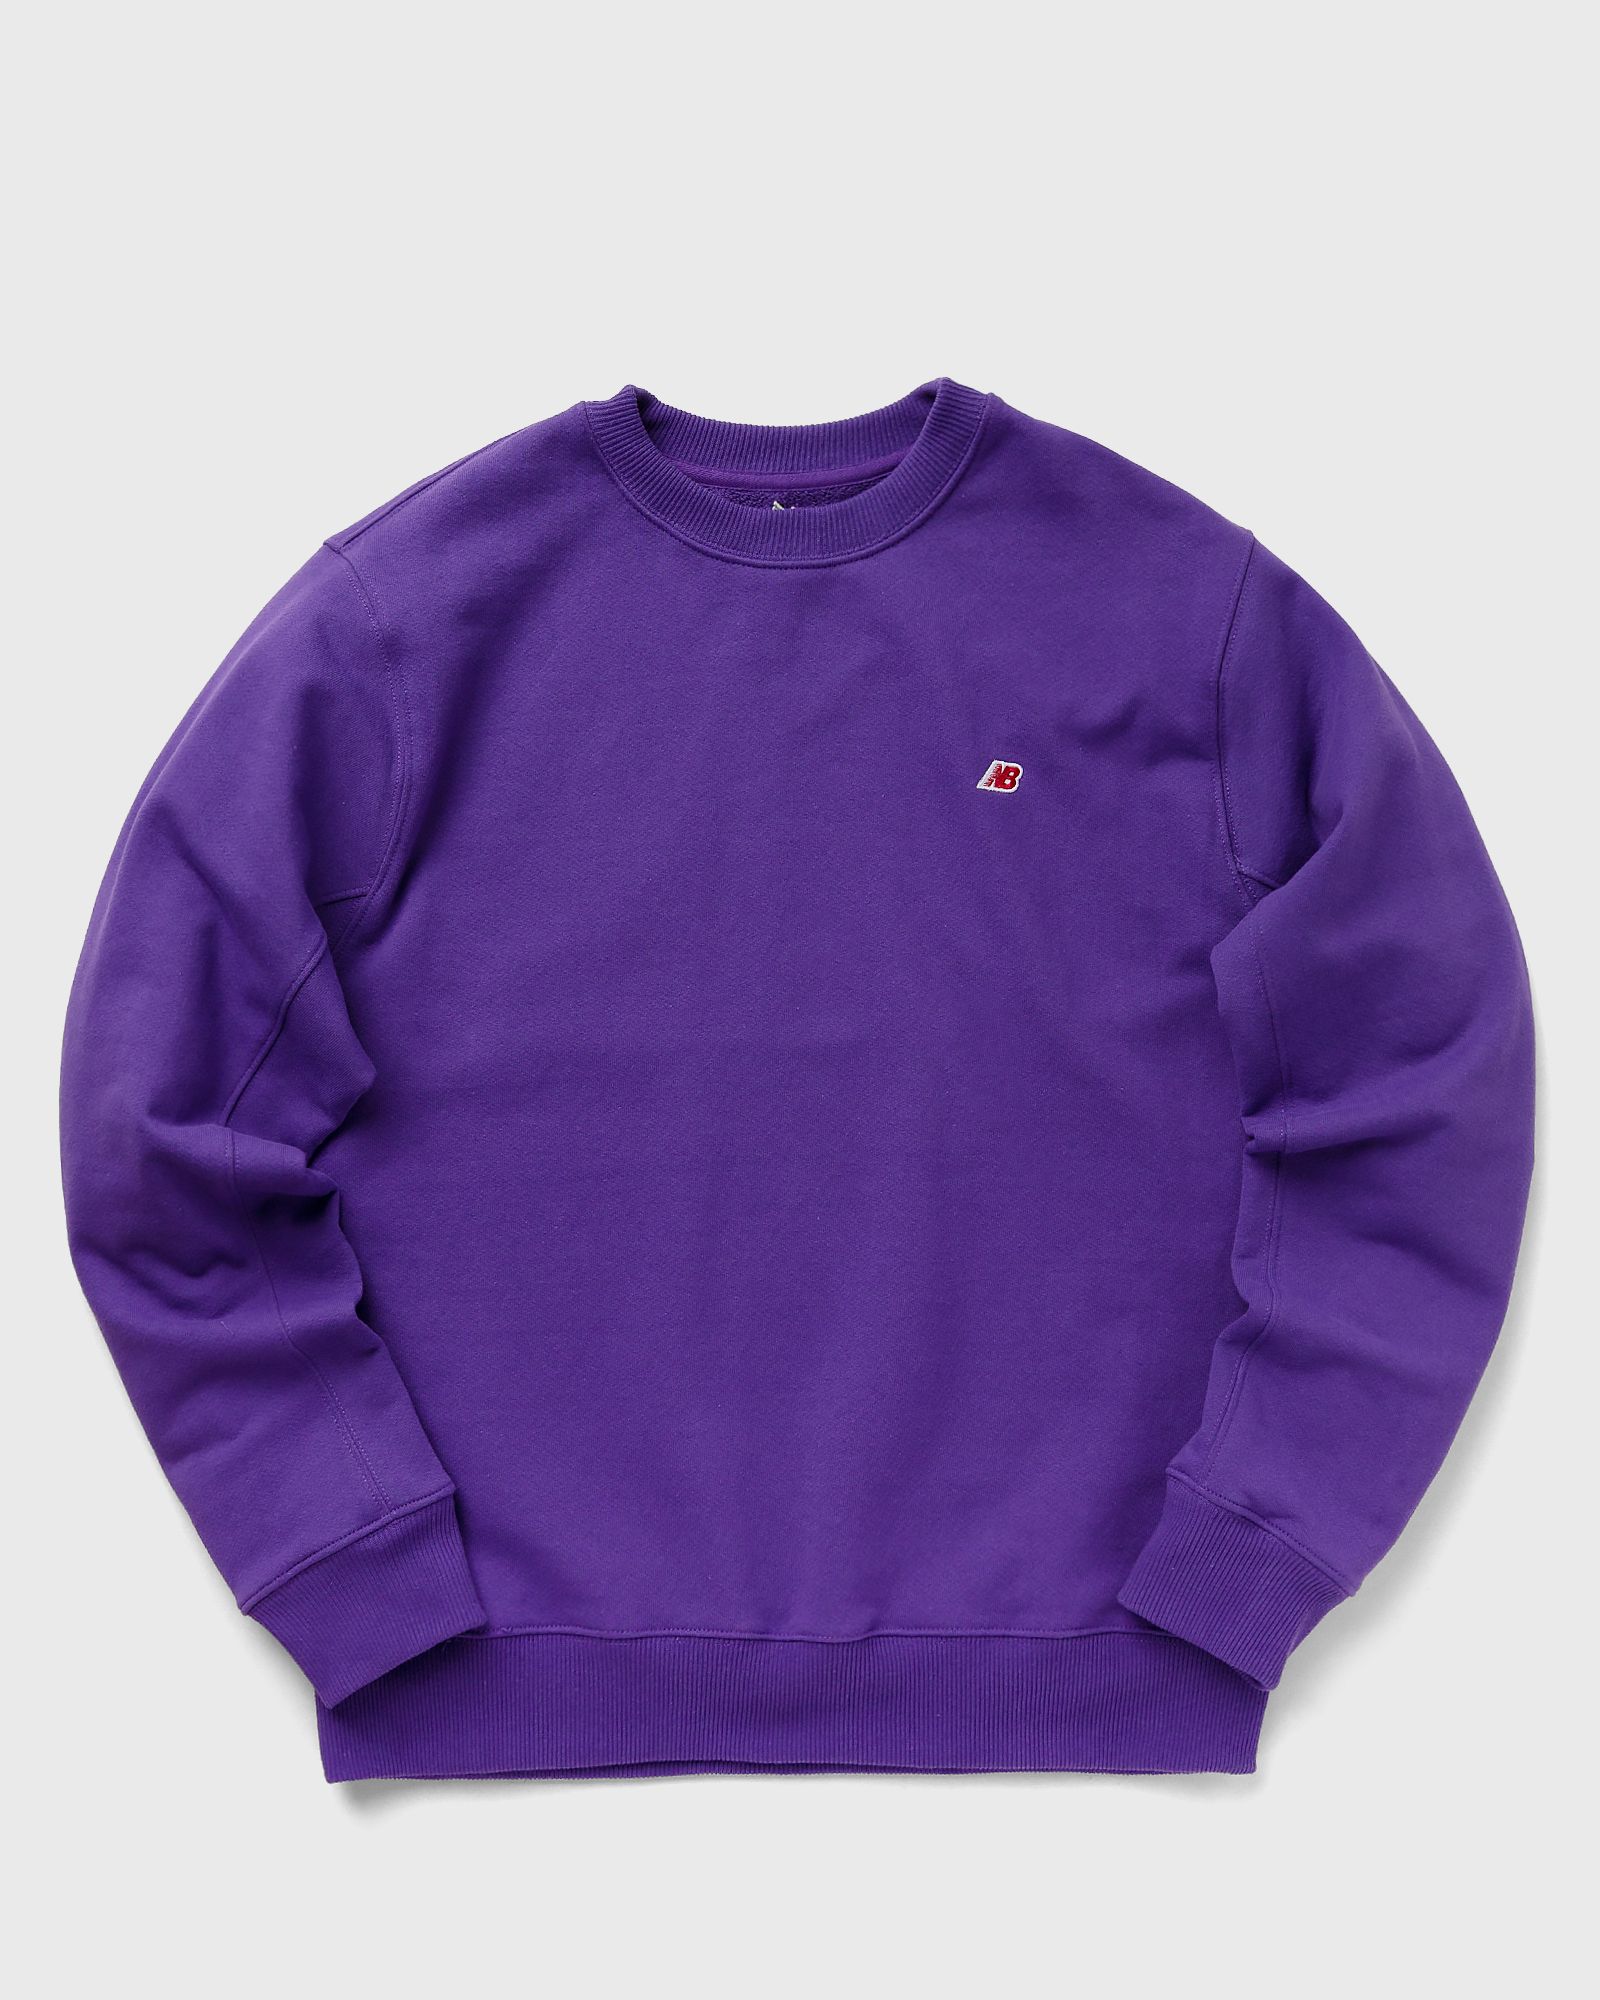 New Balance - made in usa crew sweatshirt men sweatshirts purple in größe:s